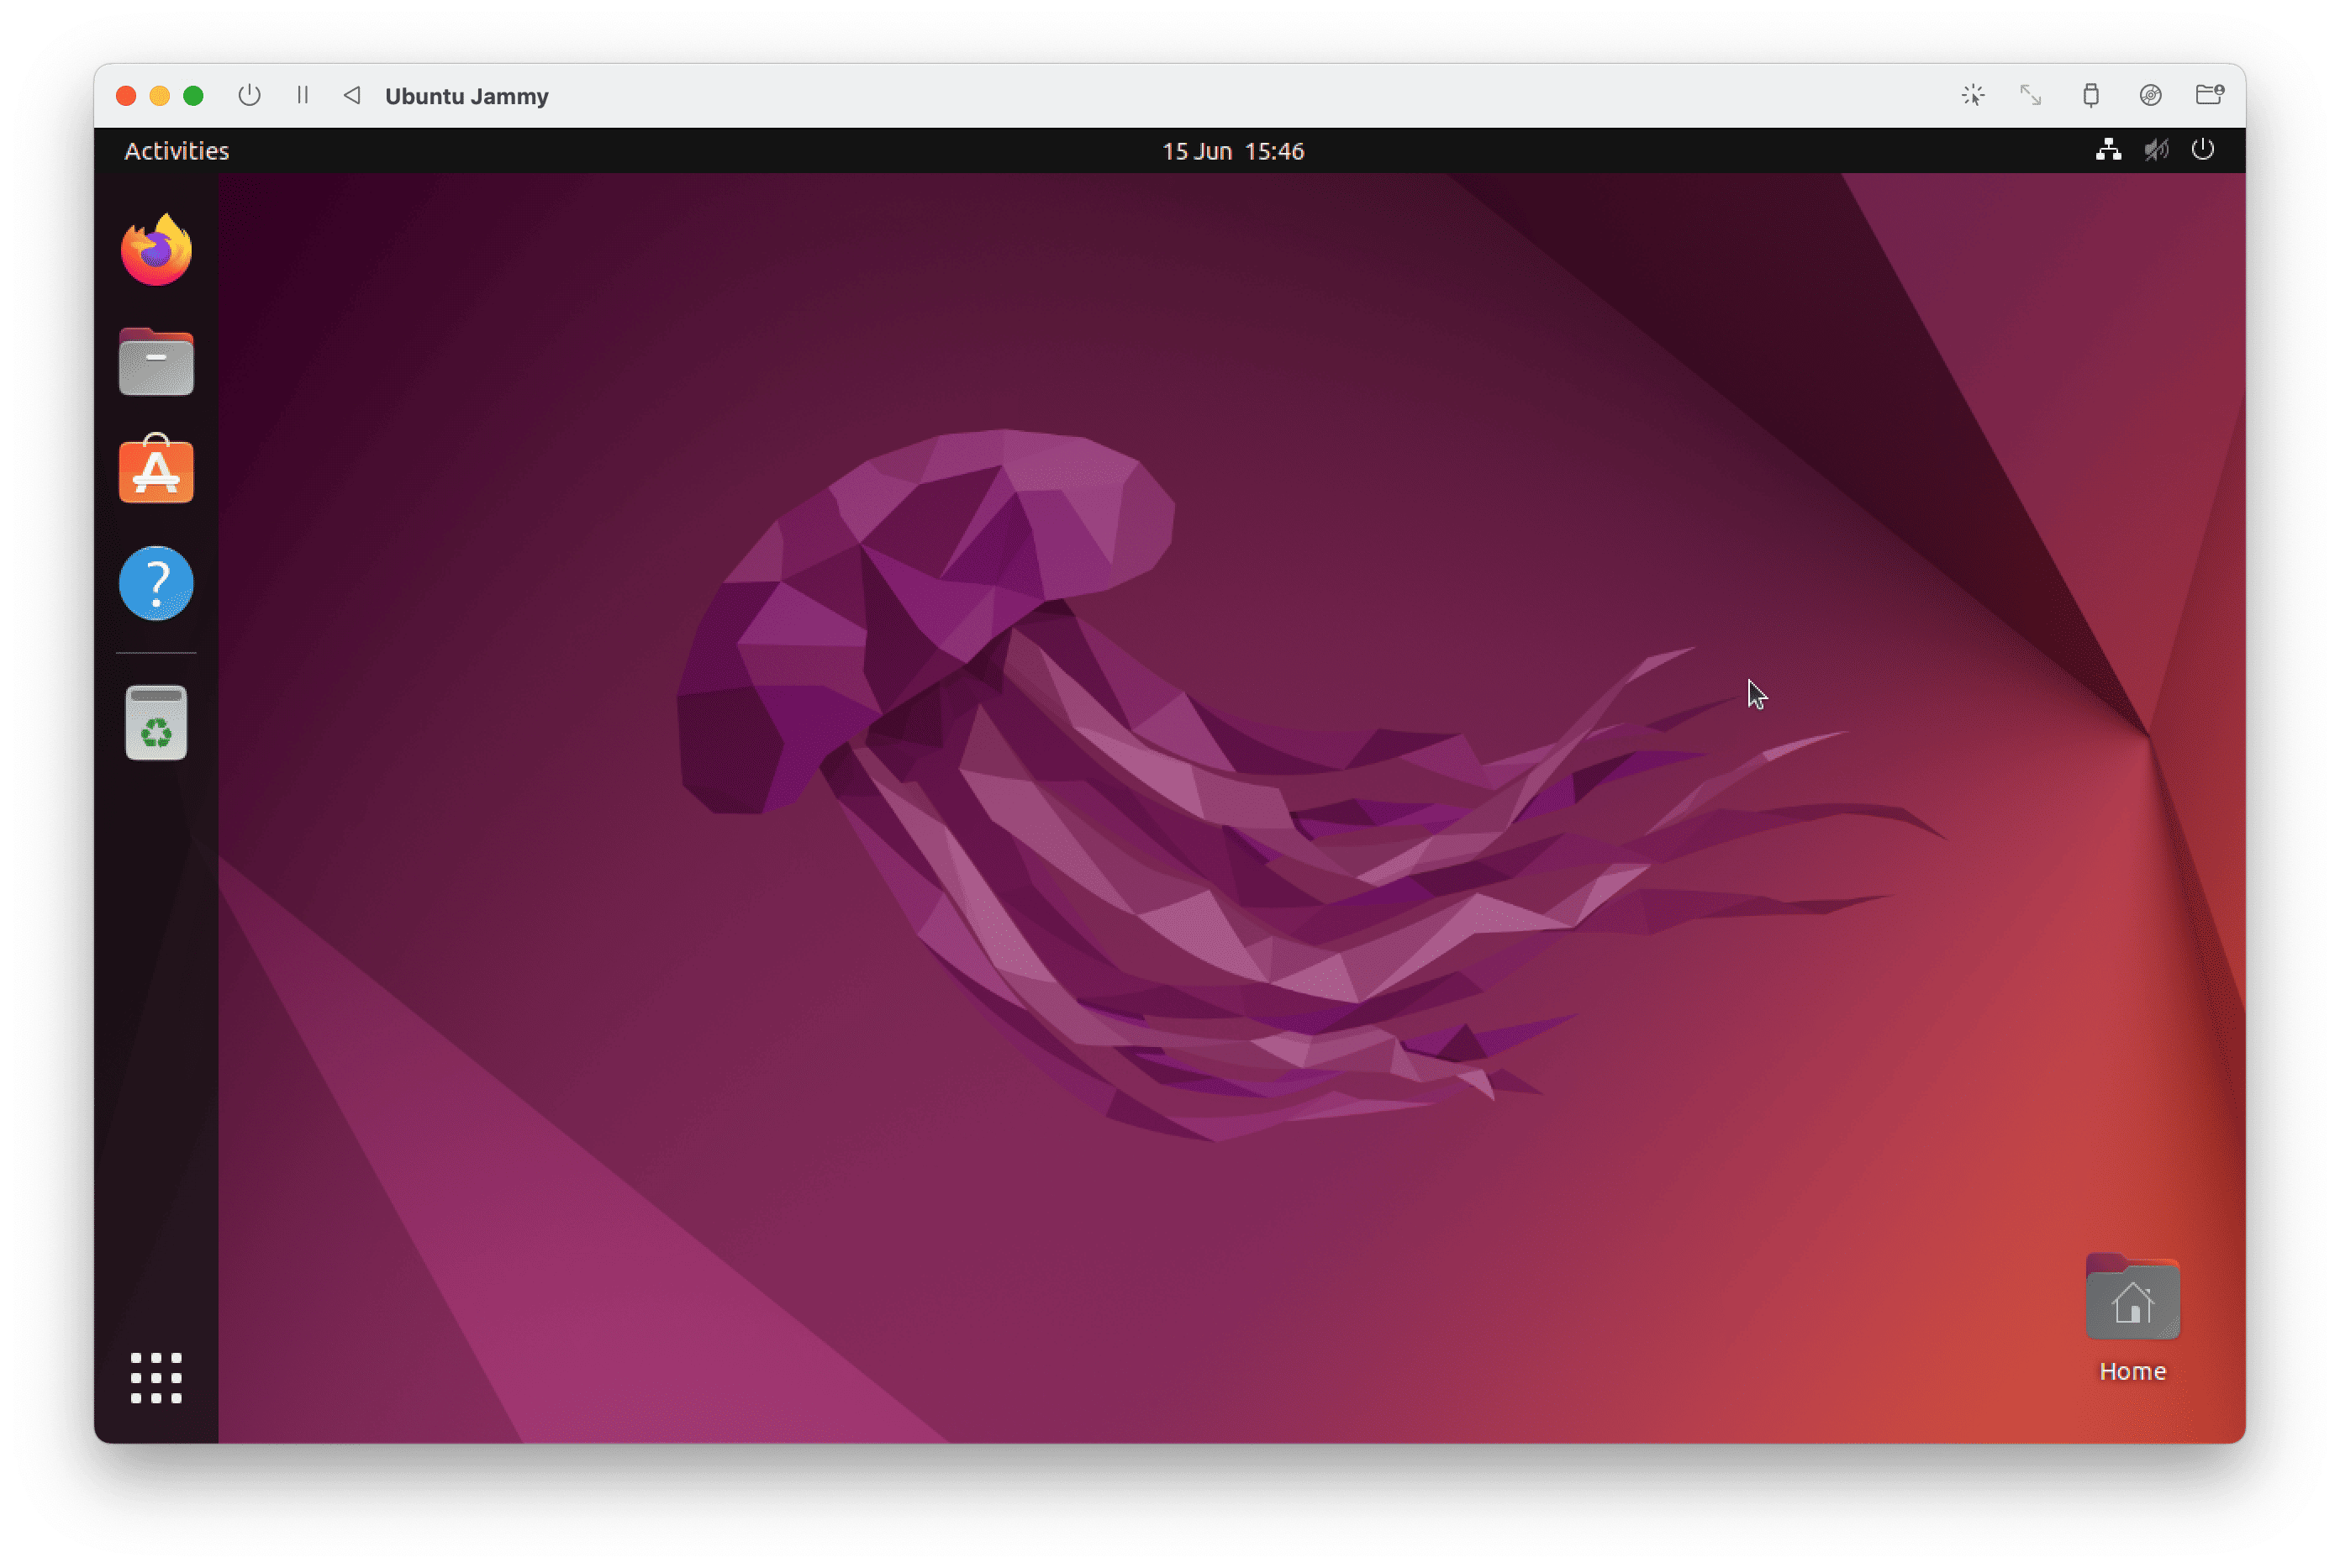 Ubuntu Jammy - UTM - Desktop